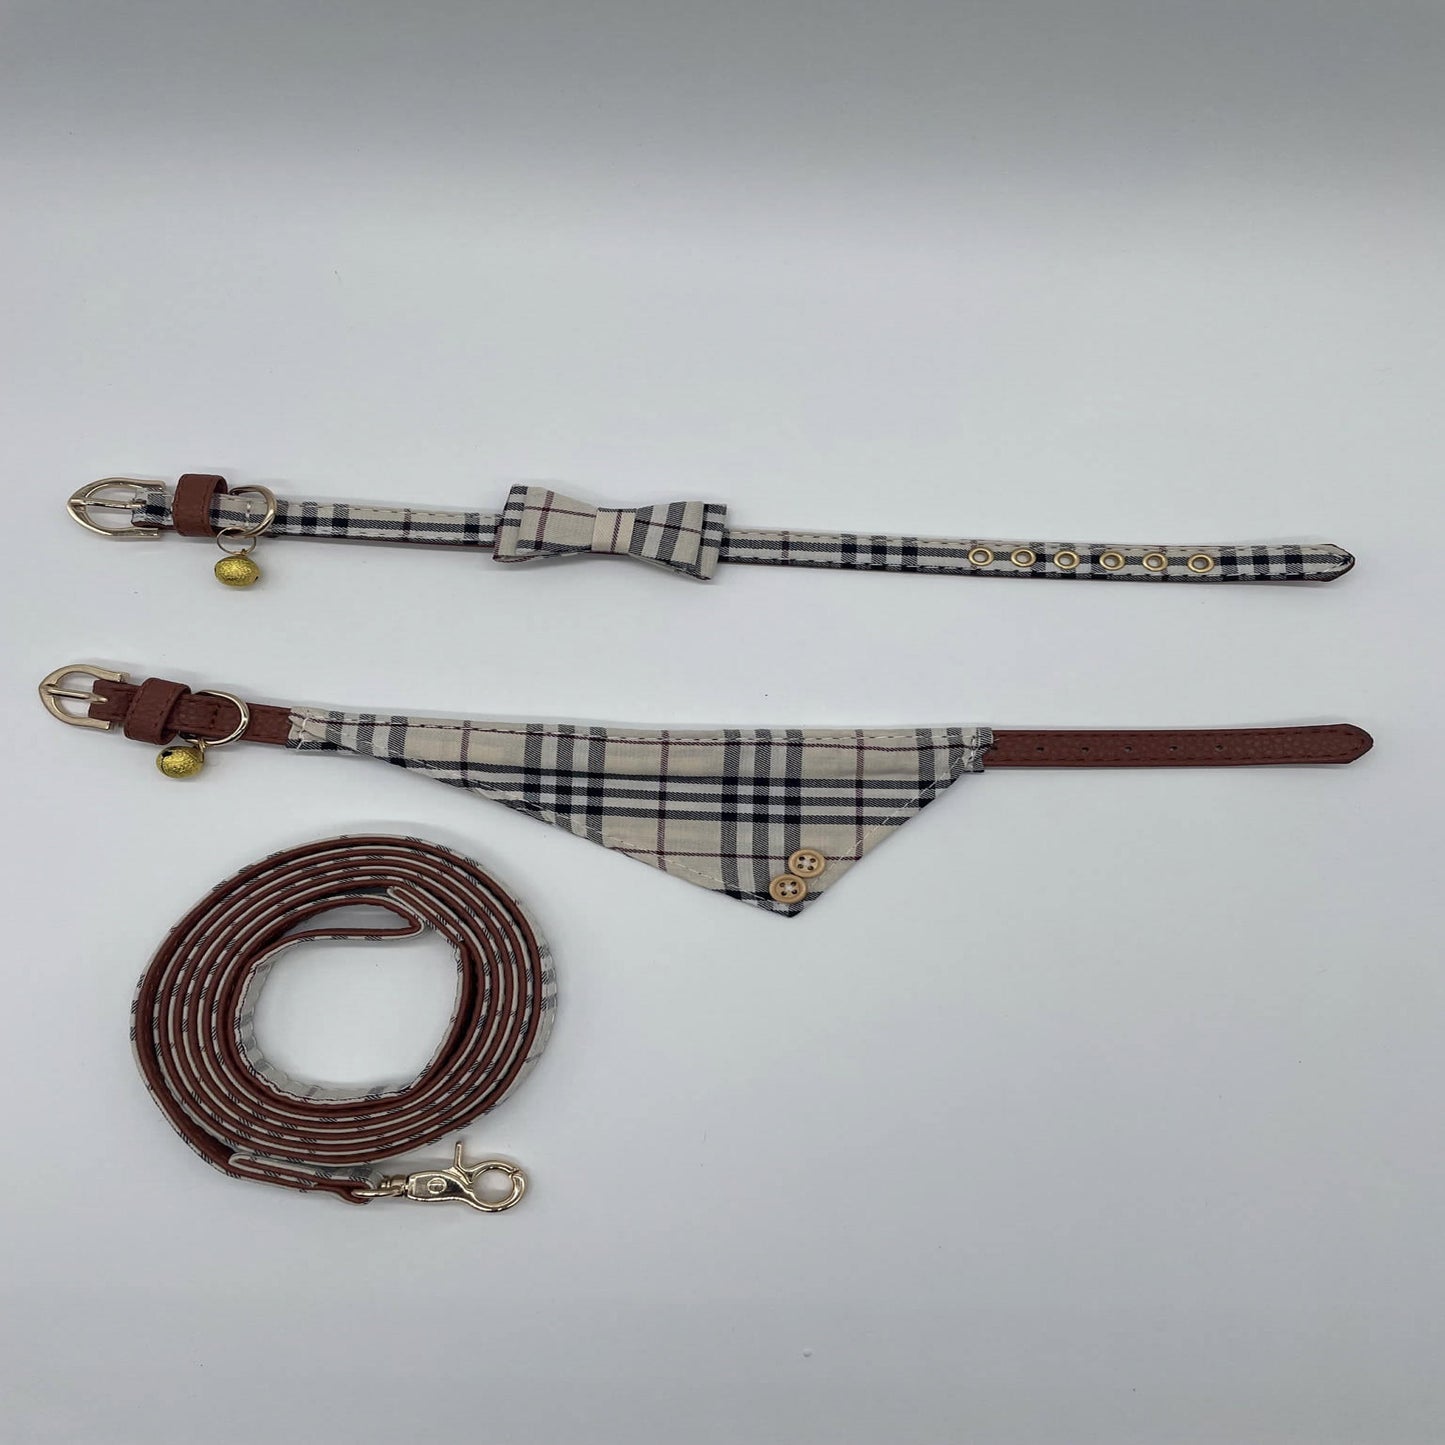 Primadon(s) - design set for pets - bow tie / bandana / leash